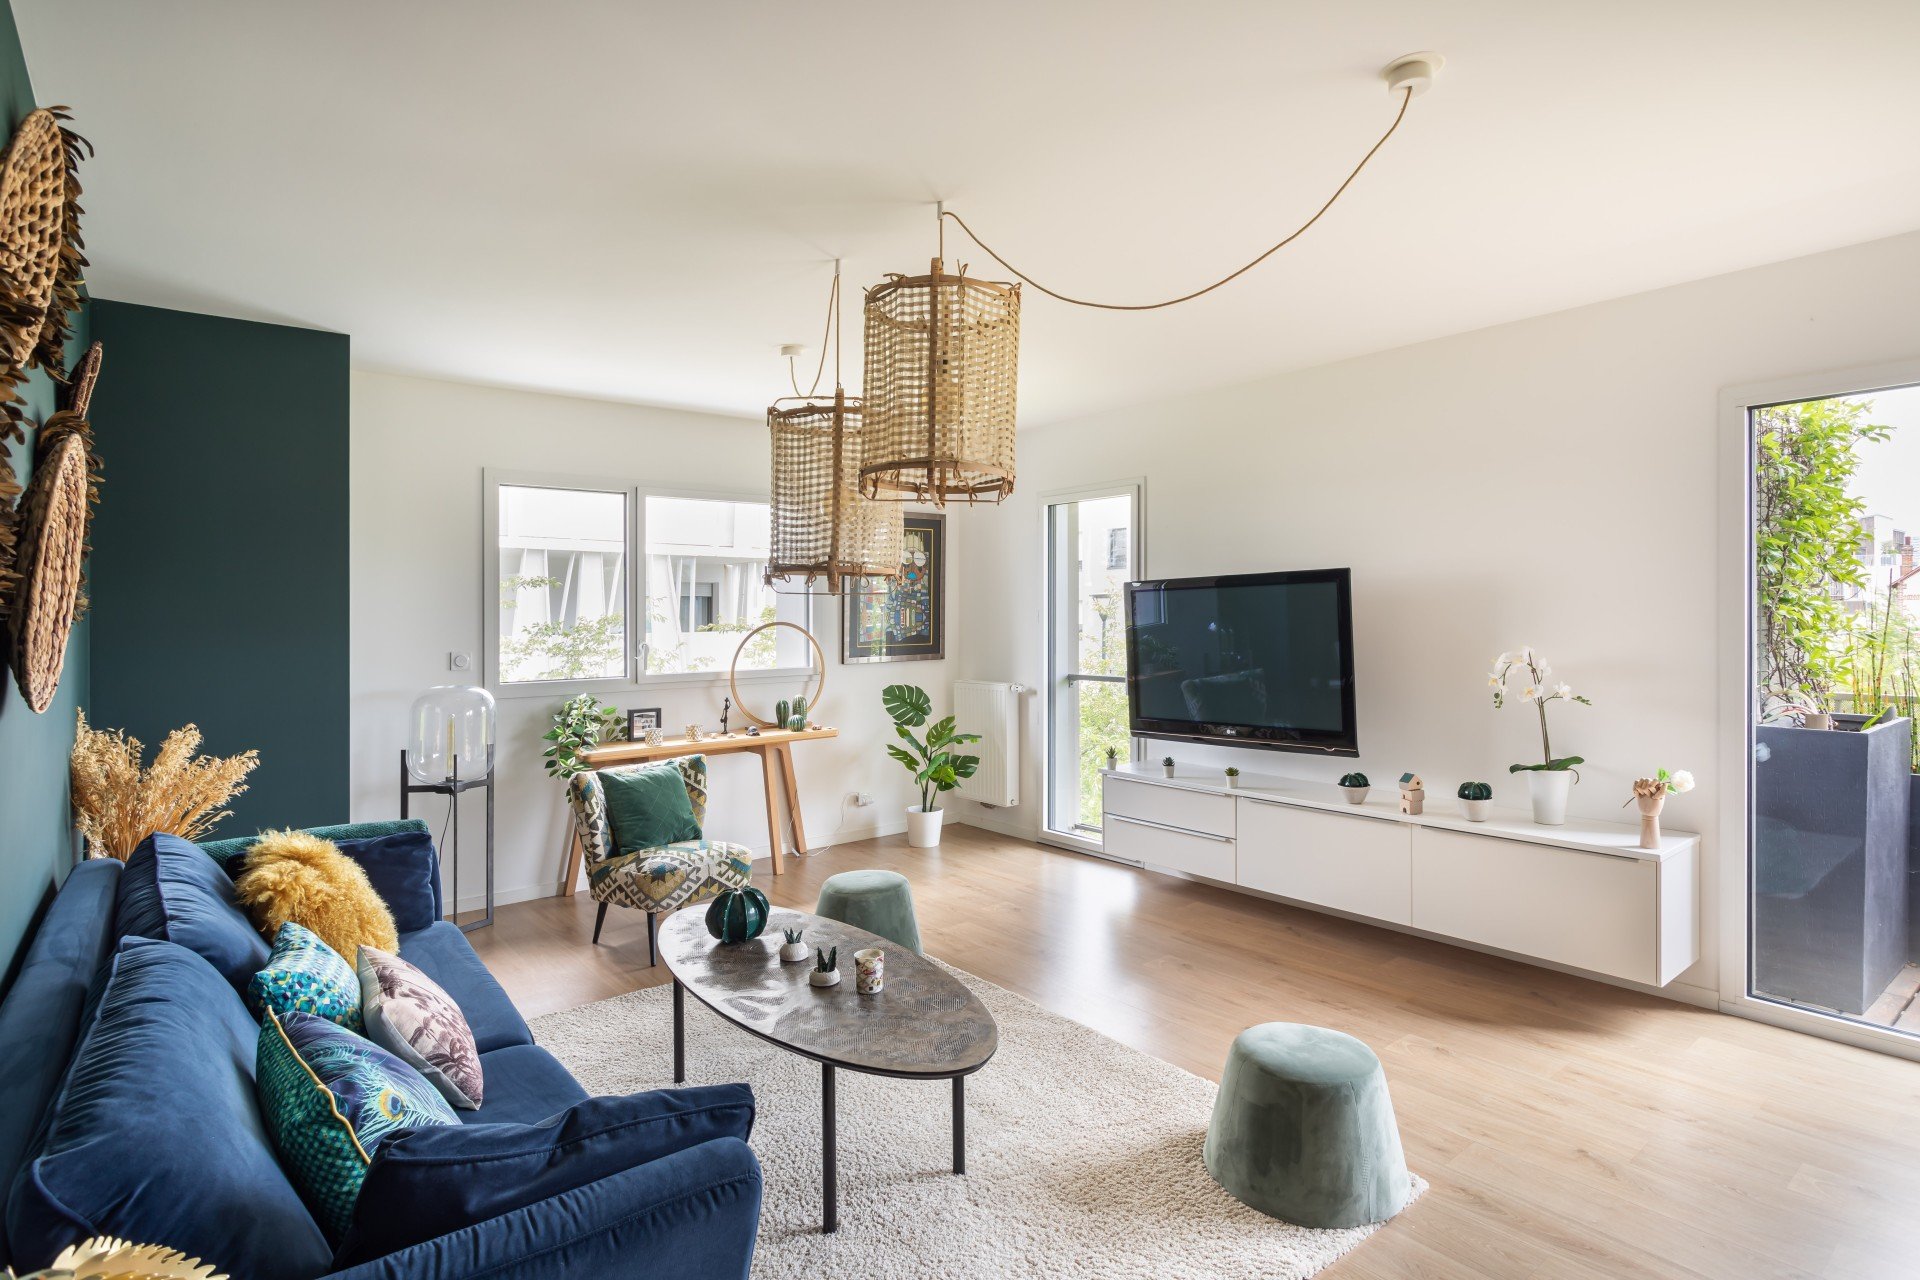 DUPLEX 3P 70m² avec spacieuse terrasse, vivez en maison au prix d'un appartement ! (3 pièces, 70 m²) Schaffhouse-sur-Zorn